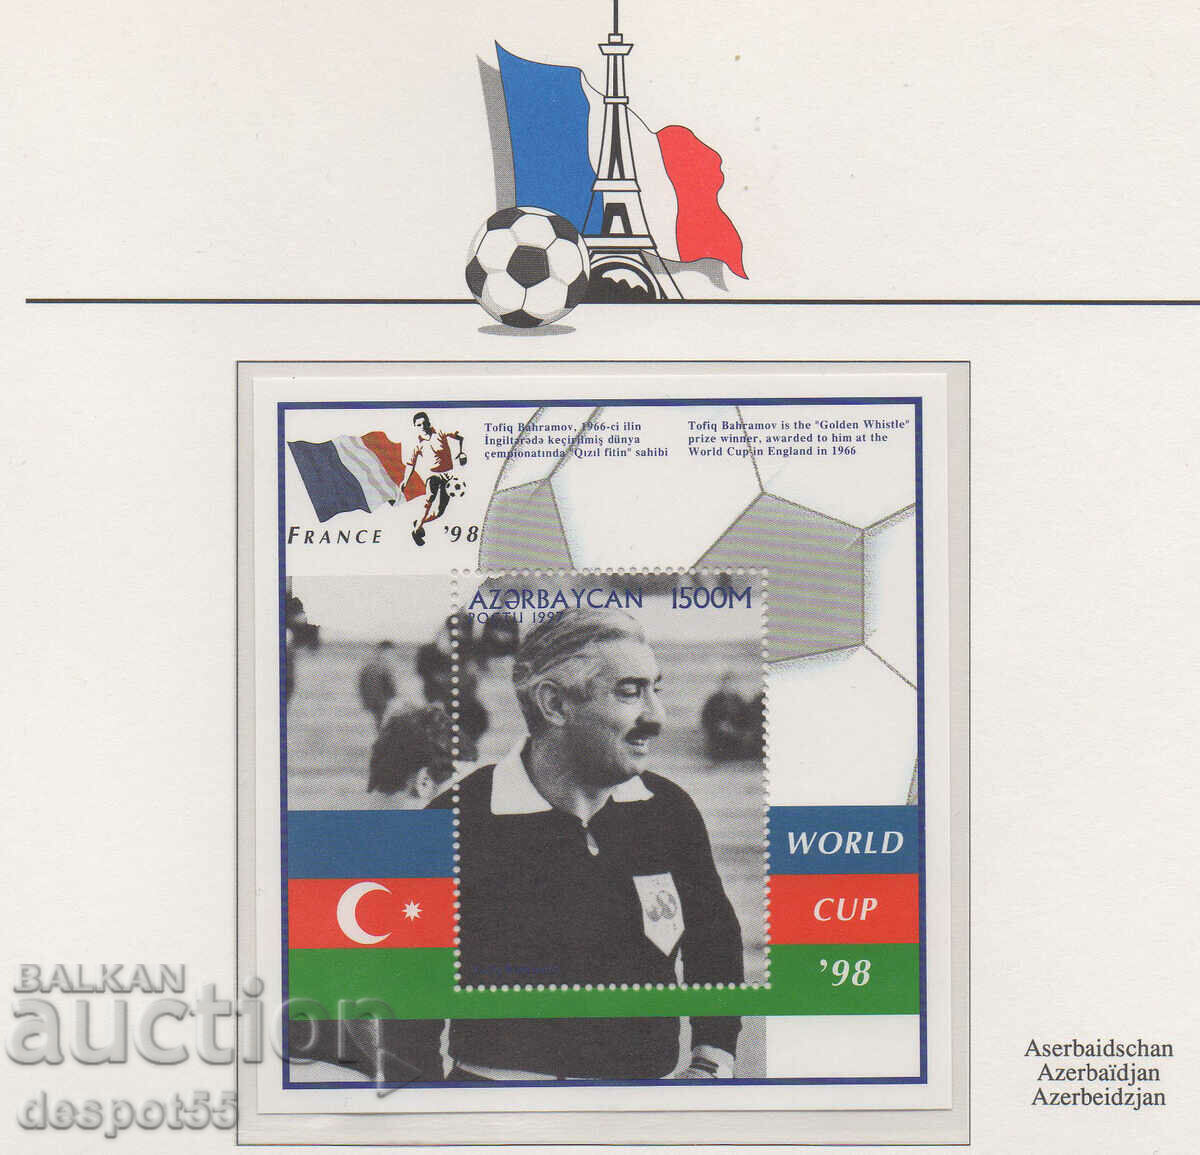 1997. Azerbaidjan. Cupa Mondială la fotbal - Franța '98.